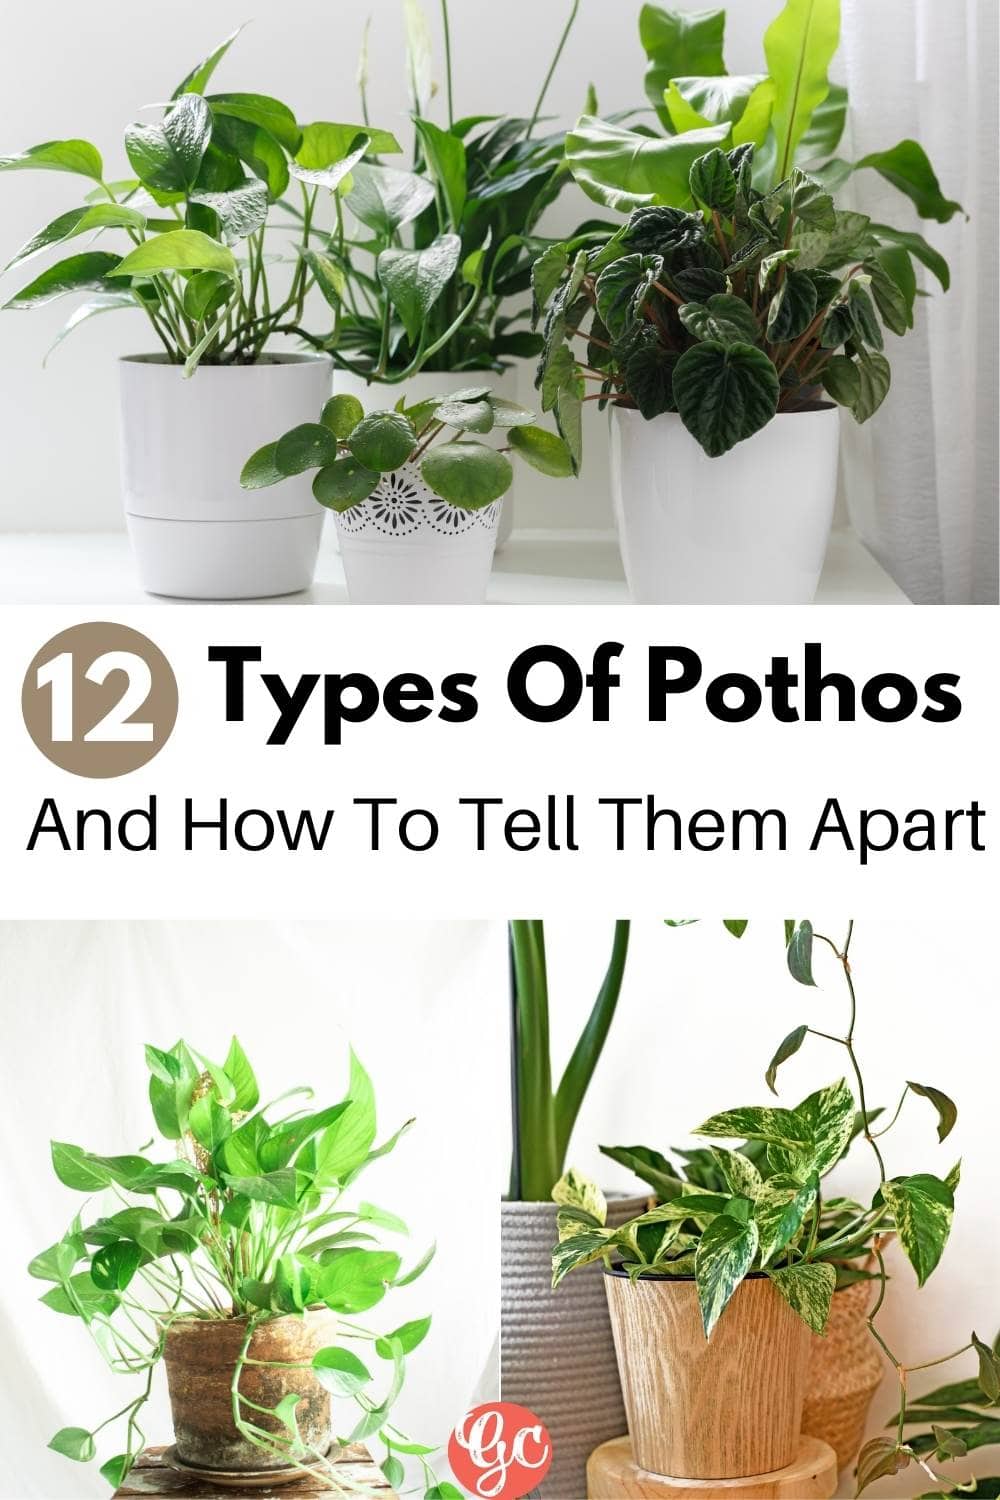  Types de Pothos : Différentes variétés de Pothos et comment les différencier